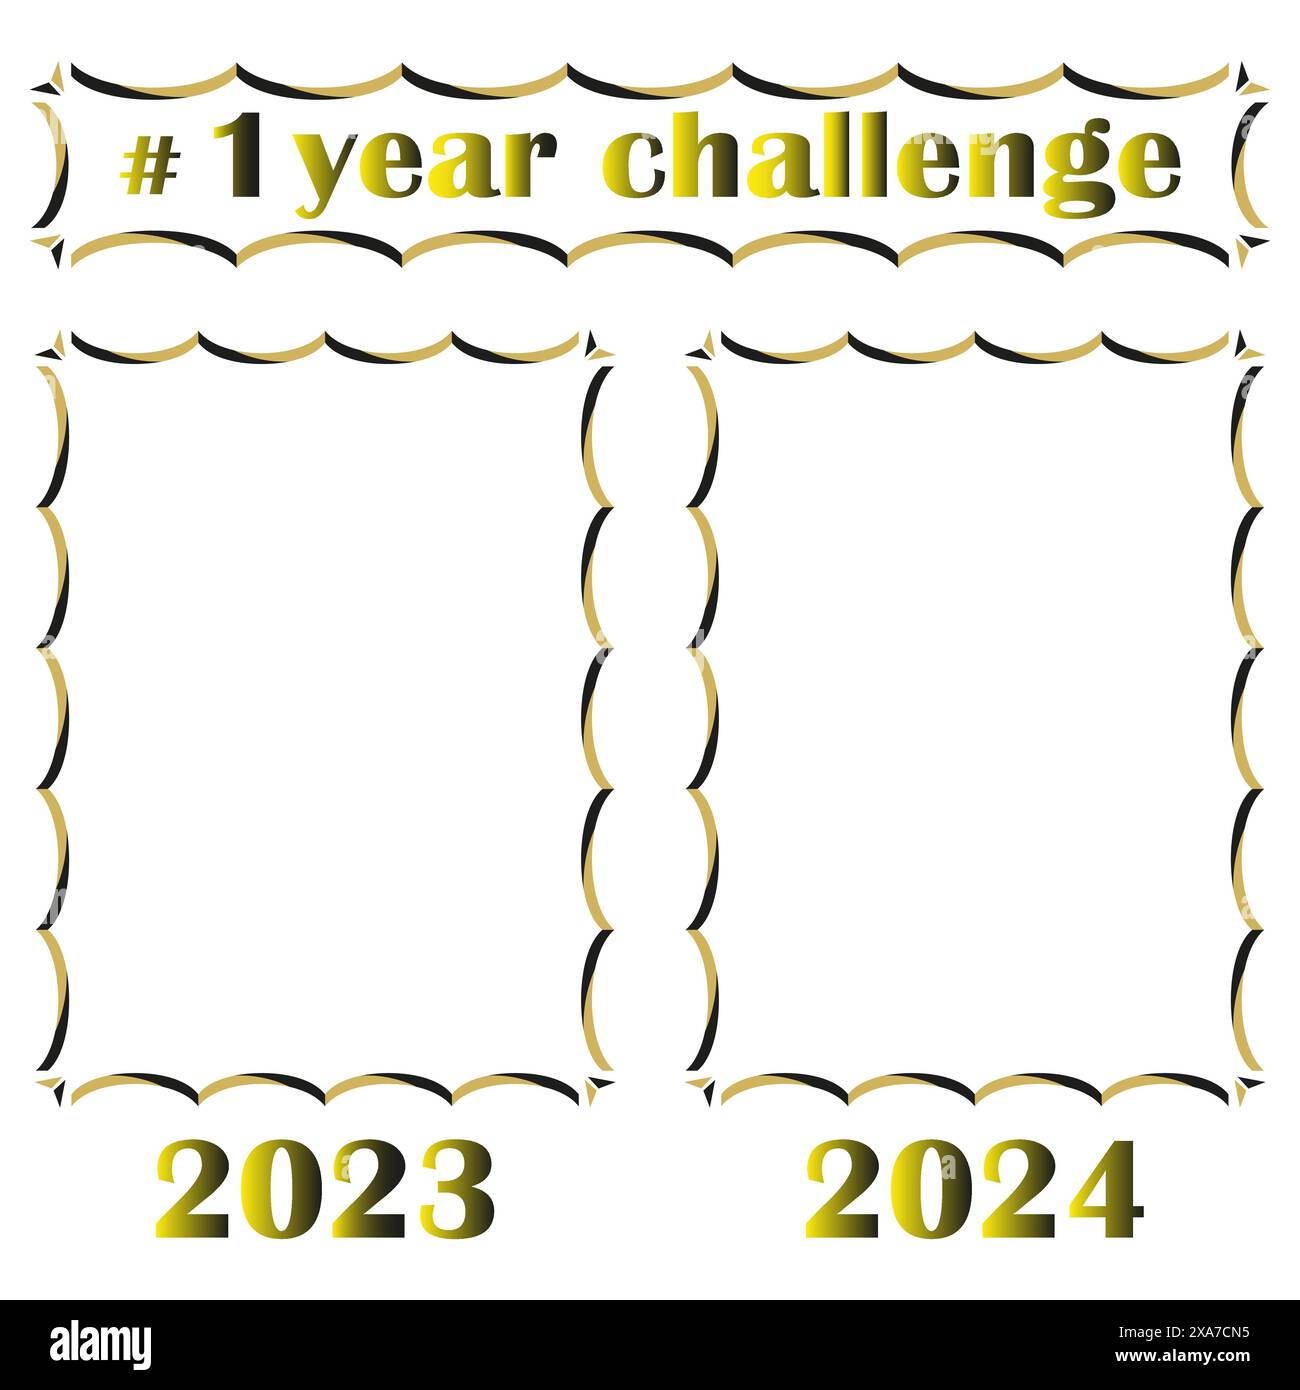 sfida di 1 anno. Cornici dorate e nere. 2023 e 2024. Modello vettoriale. Illustrazione Vettoriale